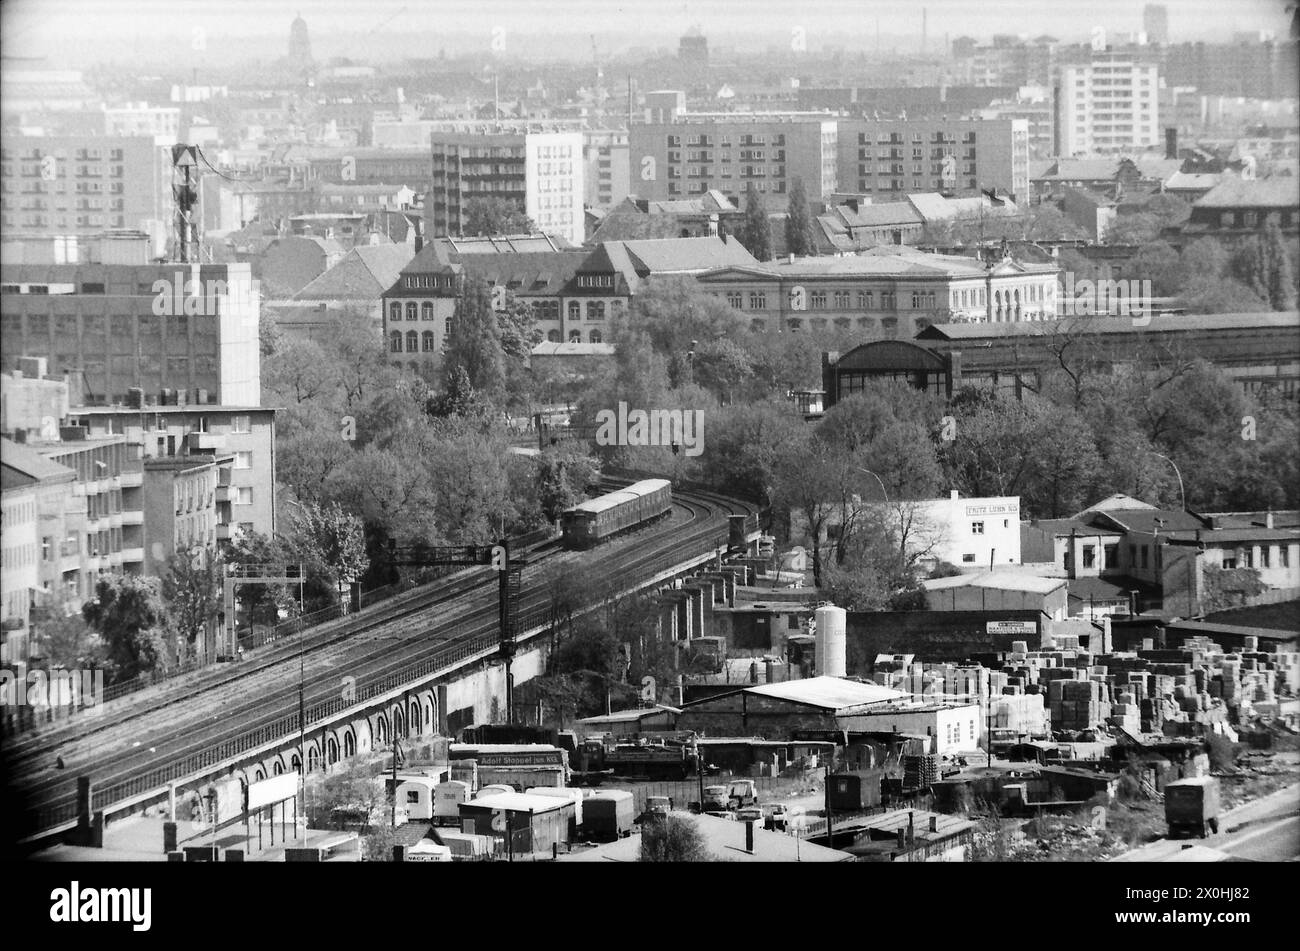 Diese Aufnahme ist eine Detailaufnahme des vorherigen Bildes, man erkennt die Stadtbahn mit einer S-Bahn, den Lehrter Stadtbahnhof, das Sozialgericht usw. [automatisierte Übersetzung] Stockfoto